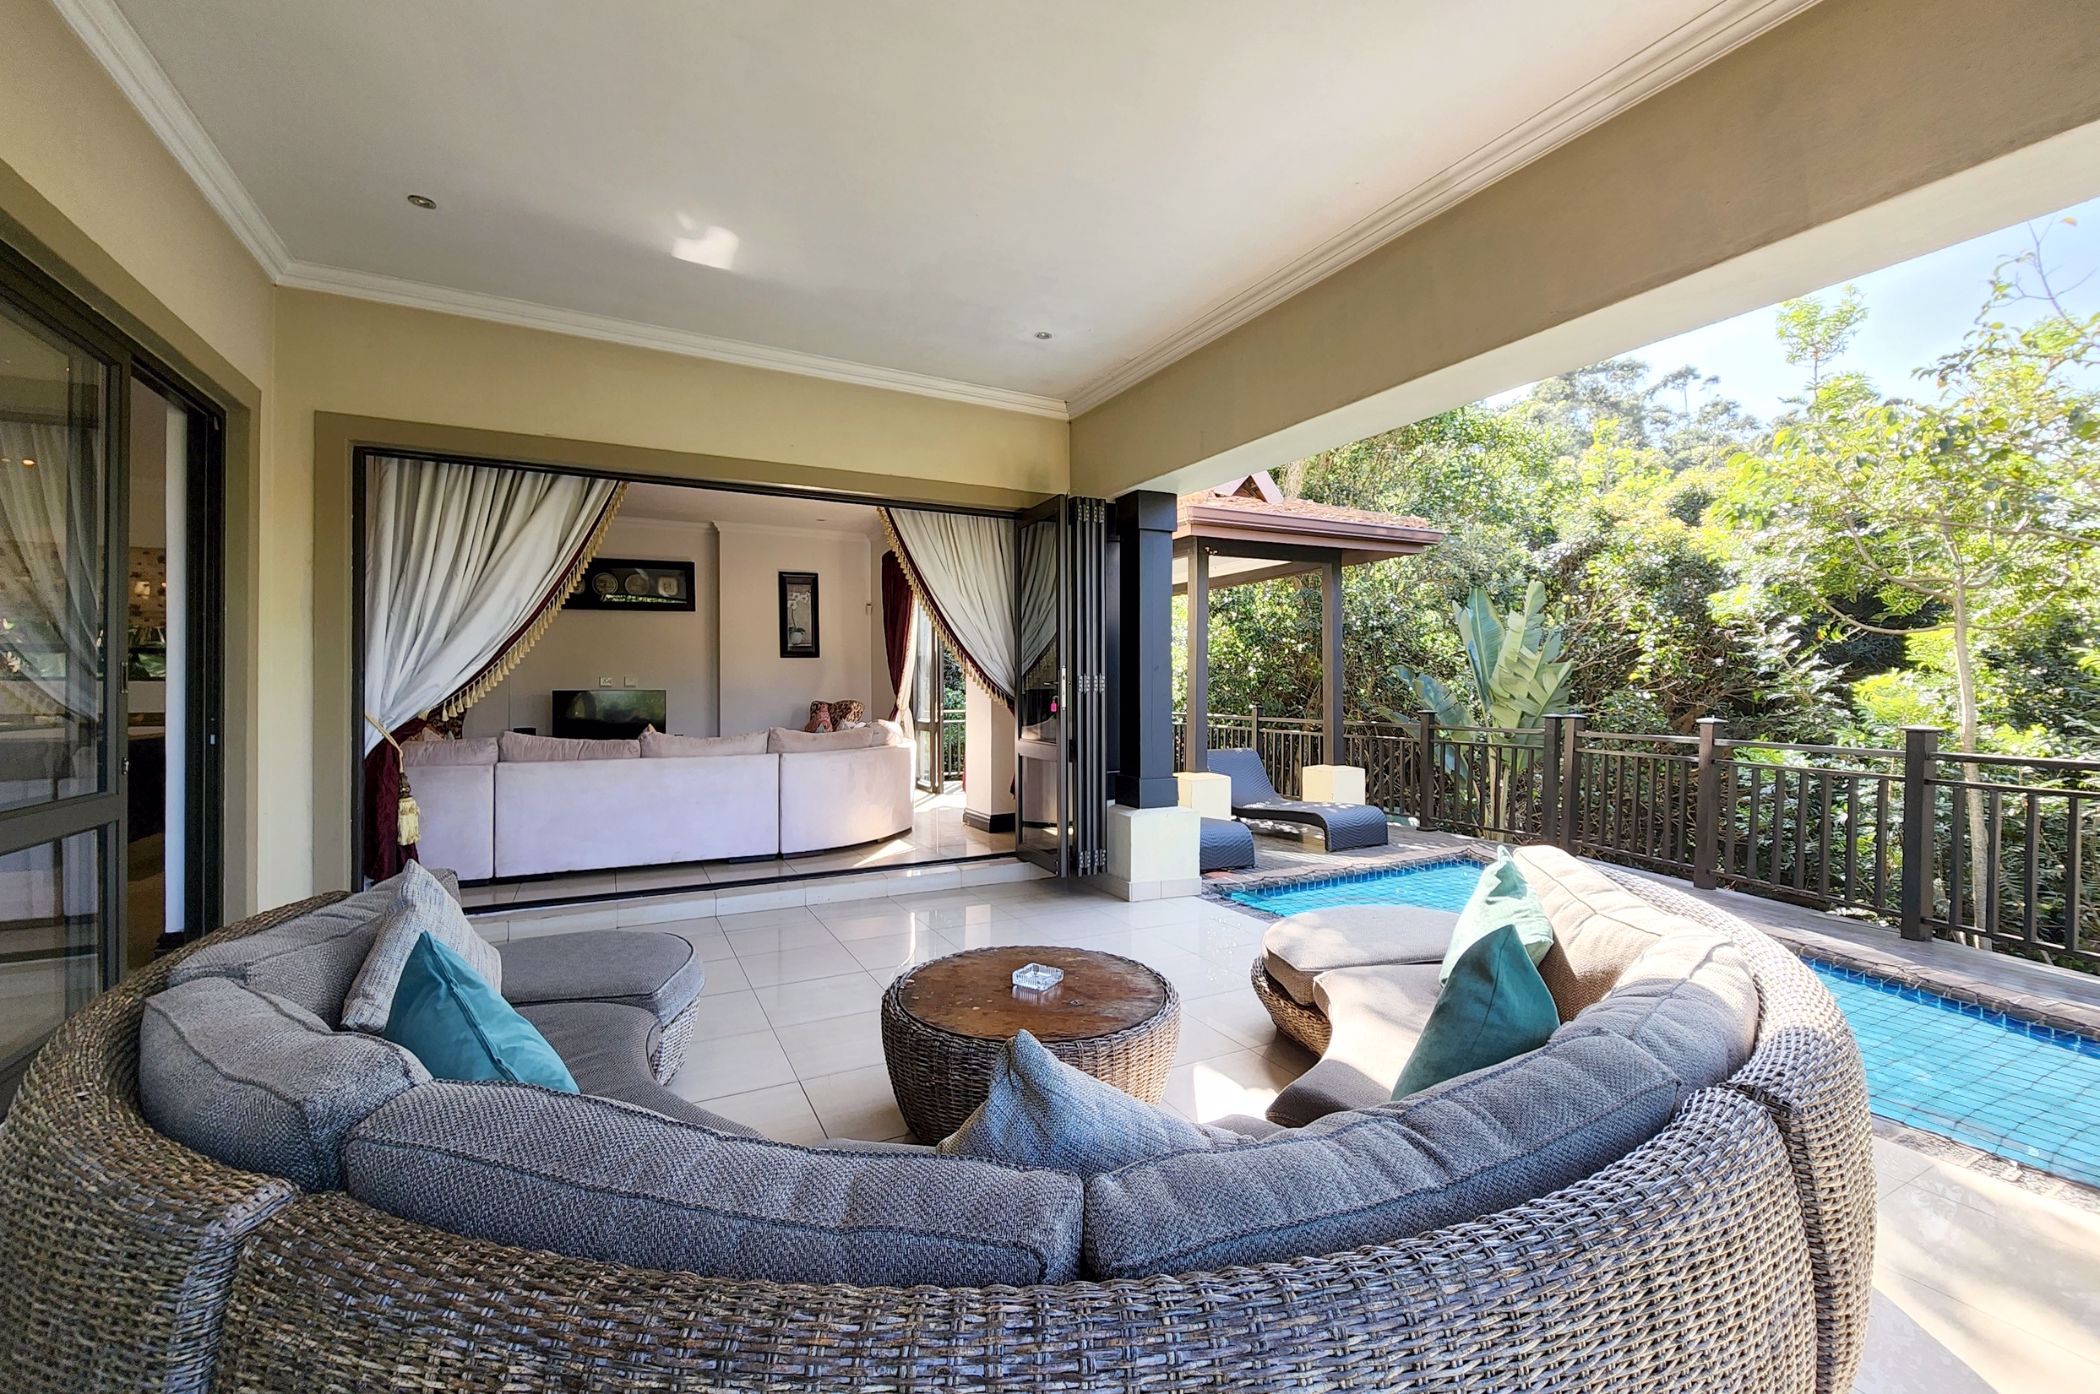 4 bedroom house for sale in Zimbali Coastal Resort